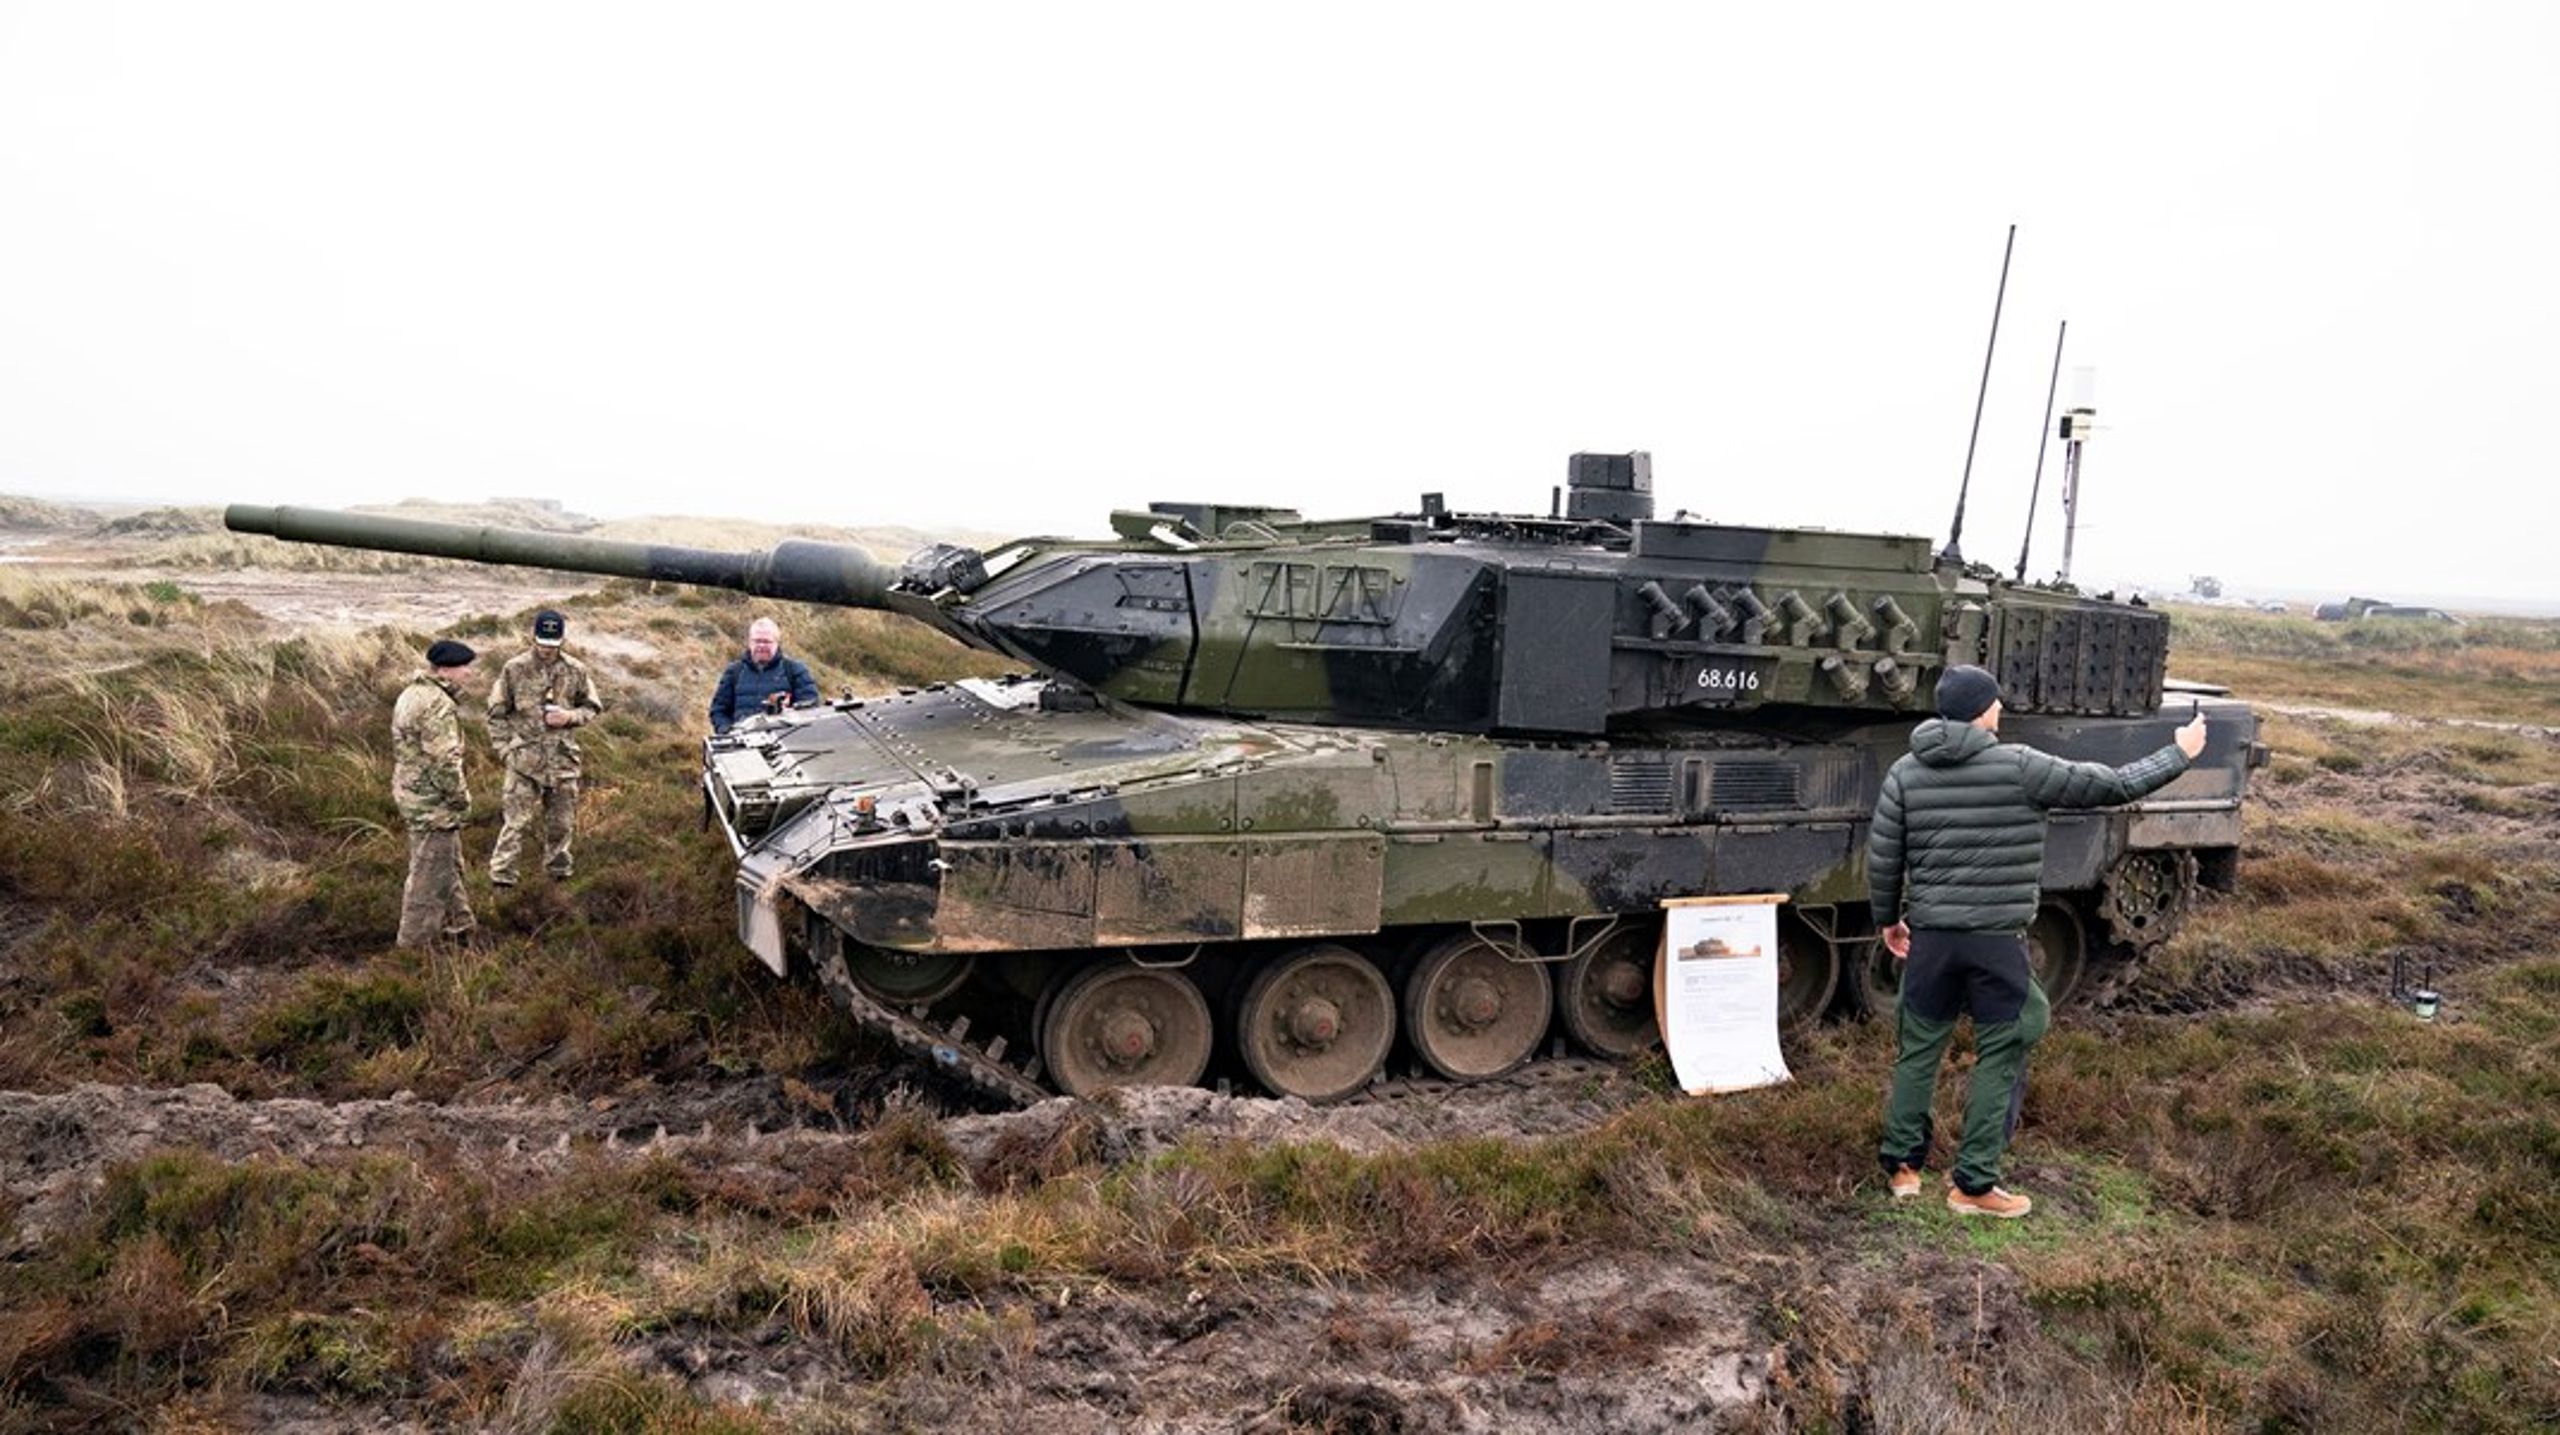 Kampvognstypen 'Leopard 2A7' kan blive Hærens sidste fuldblodskampvogn, når designet i løbet af 2030'erne forældes. Det vil i så fald være en beslutning, der satser på, at kampvognsteknologien ikke kan følge med i fremtidens krige, skriver&nbsp;Martin A. Husted.